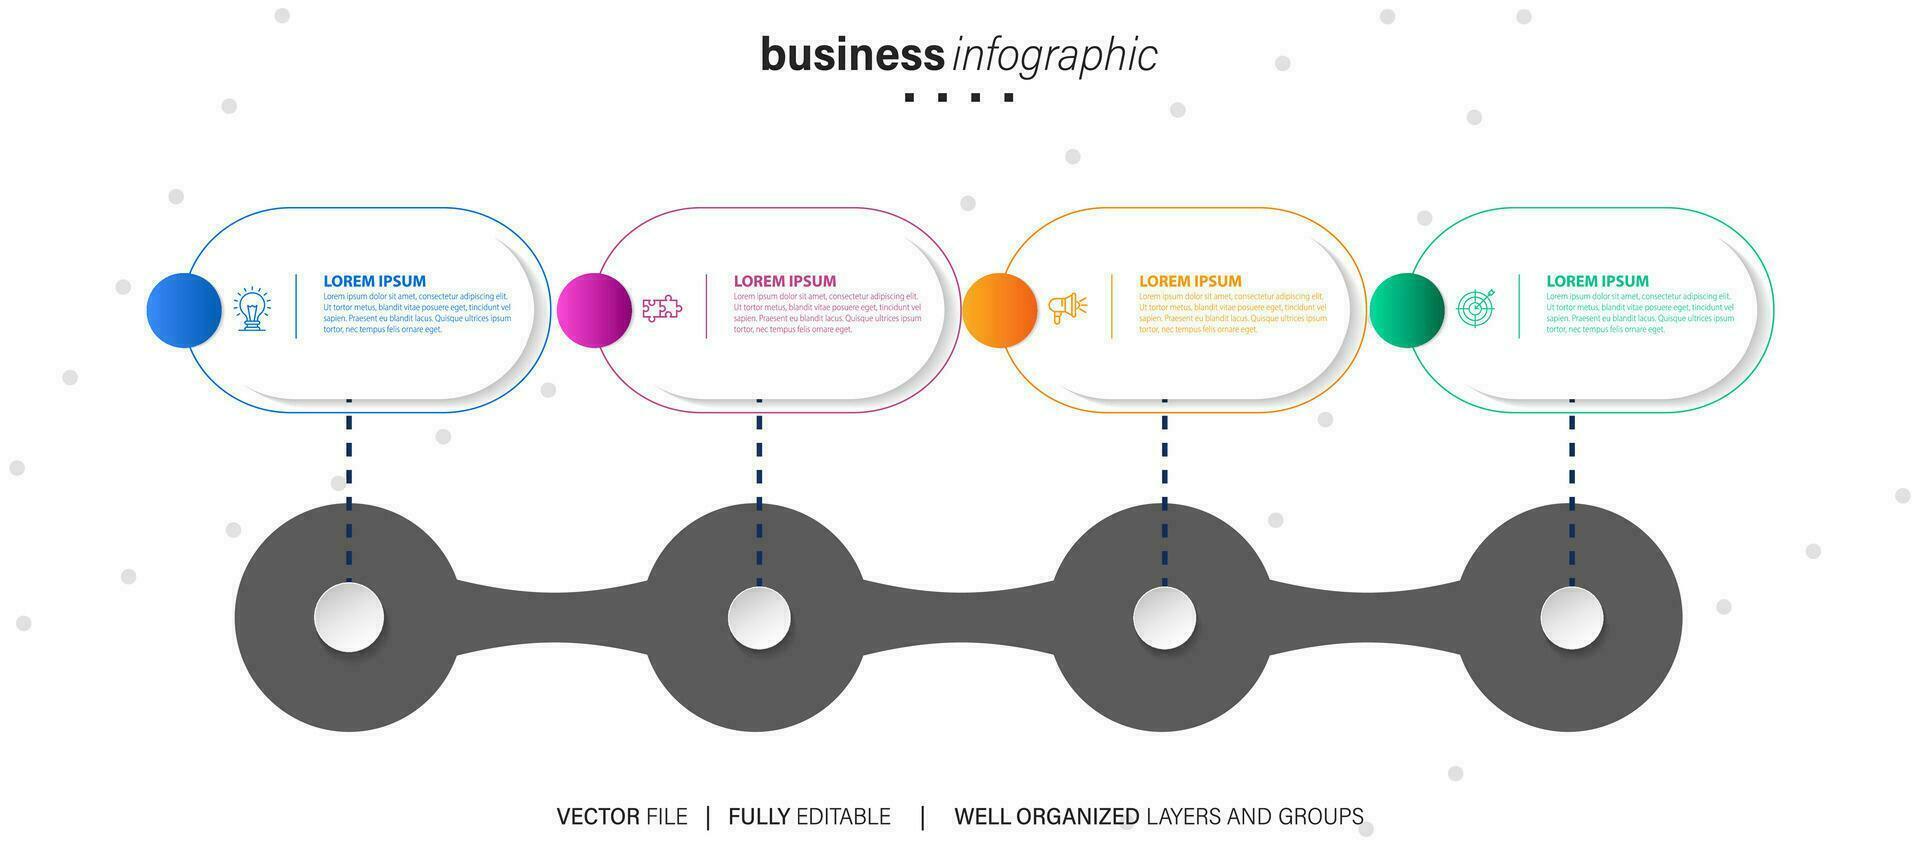 dun lijn werkwijze bedrijf infographic met plein sjabloon. vector illustratie. werkwijze tijdlijn met 4 opties, stappen of secties.